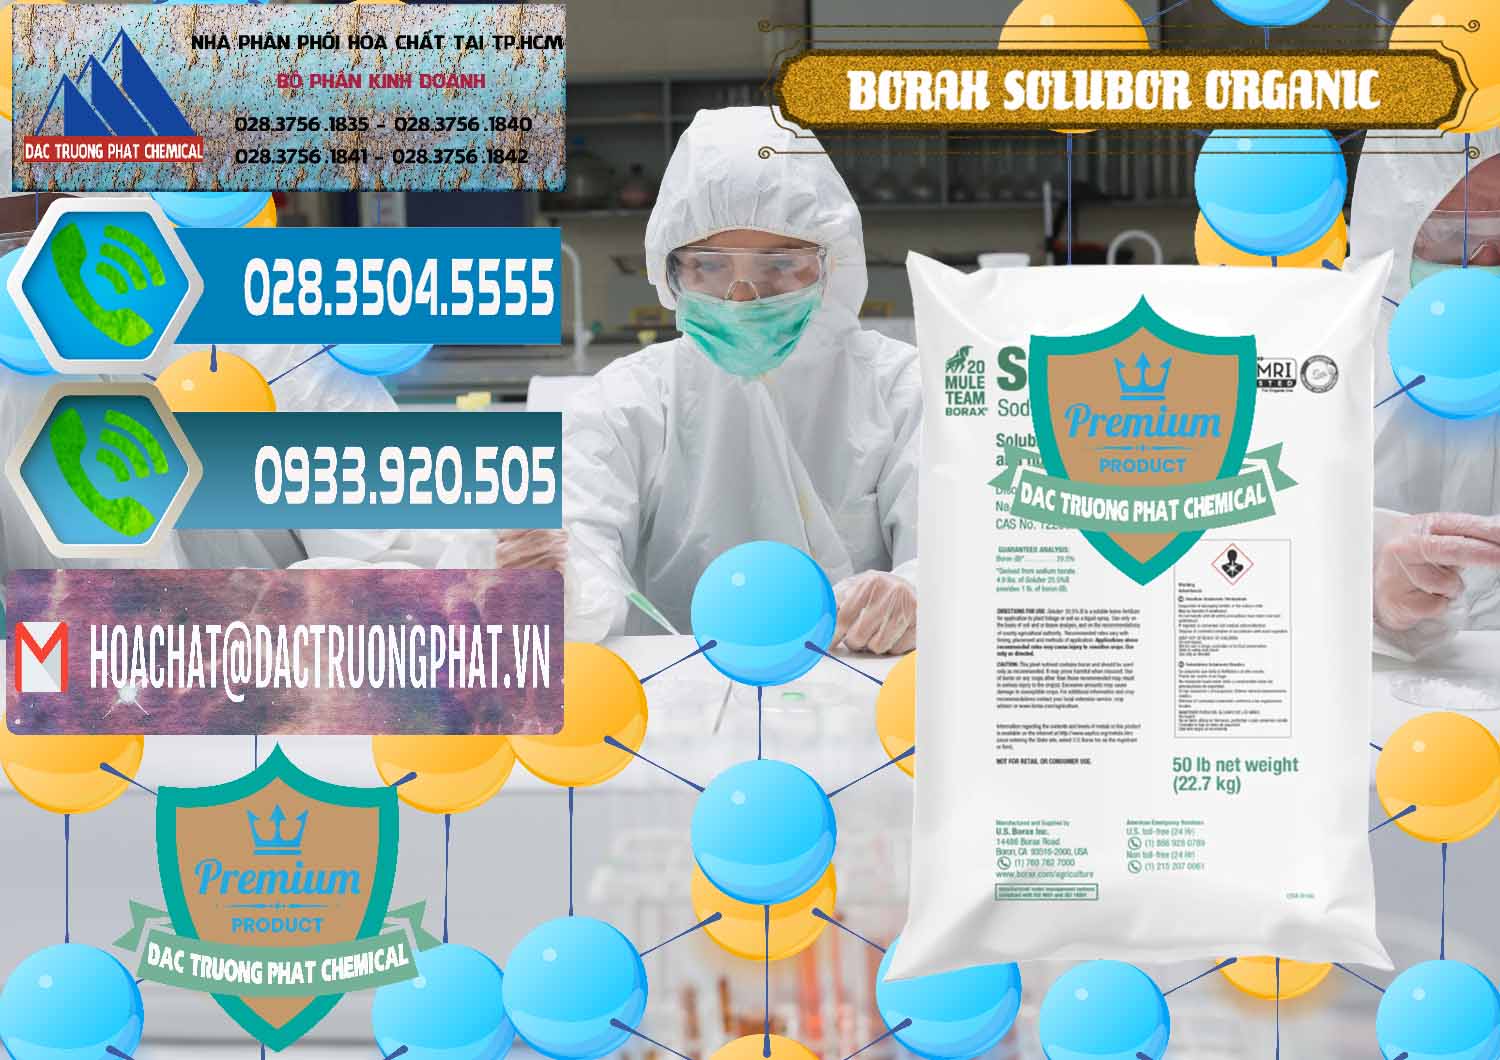 Đơn vị kinh doanh - bán Borax Hữu Cơ Solubor Organic Mỹ Usa - Mule 20 Team - 0458 - Cty kinh doanh & phân phối hóa chất tại TP.HCM - congtyhoachat.net